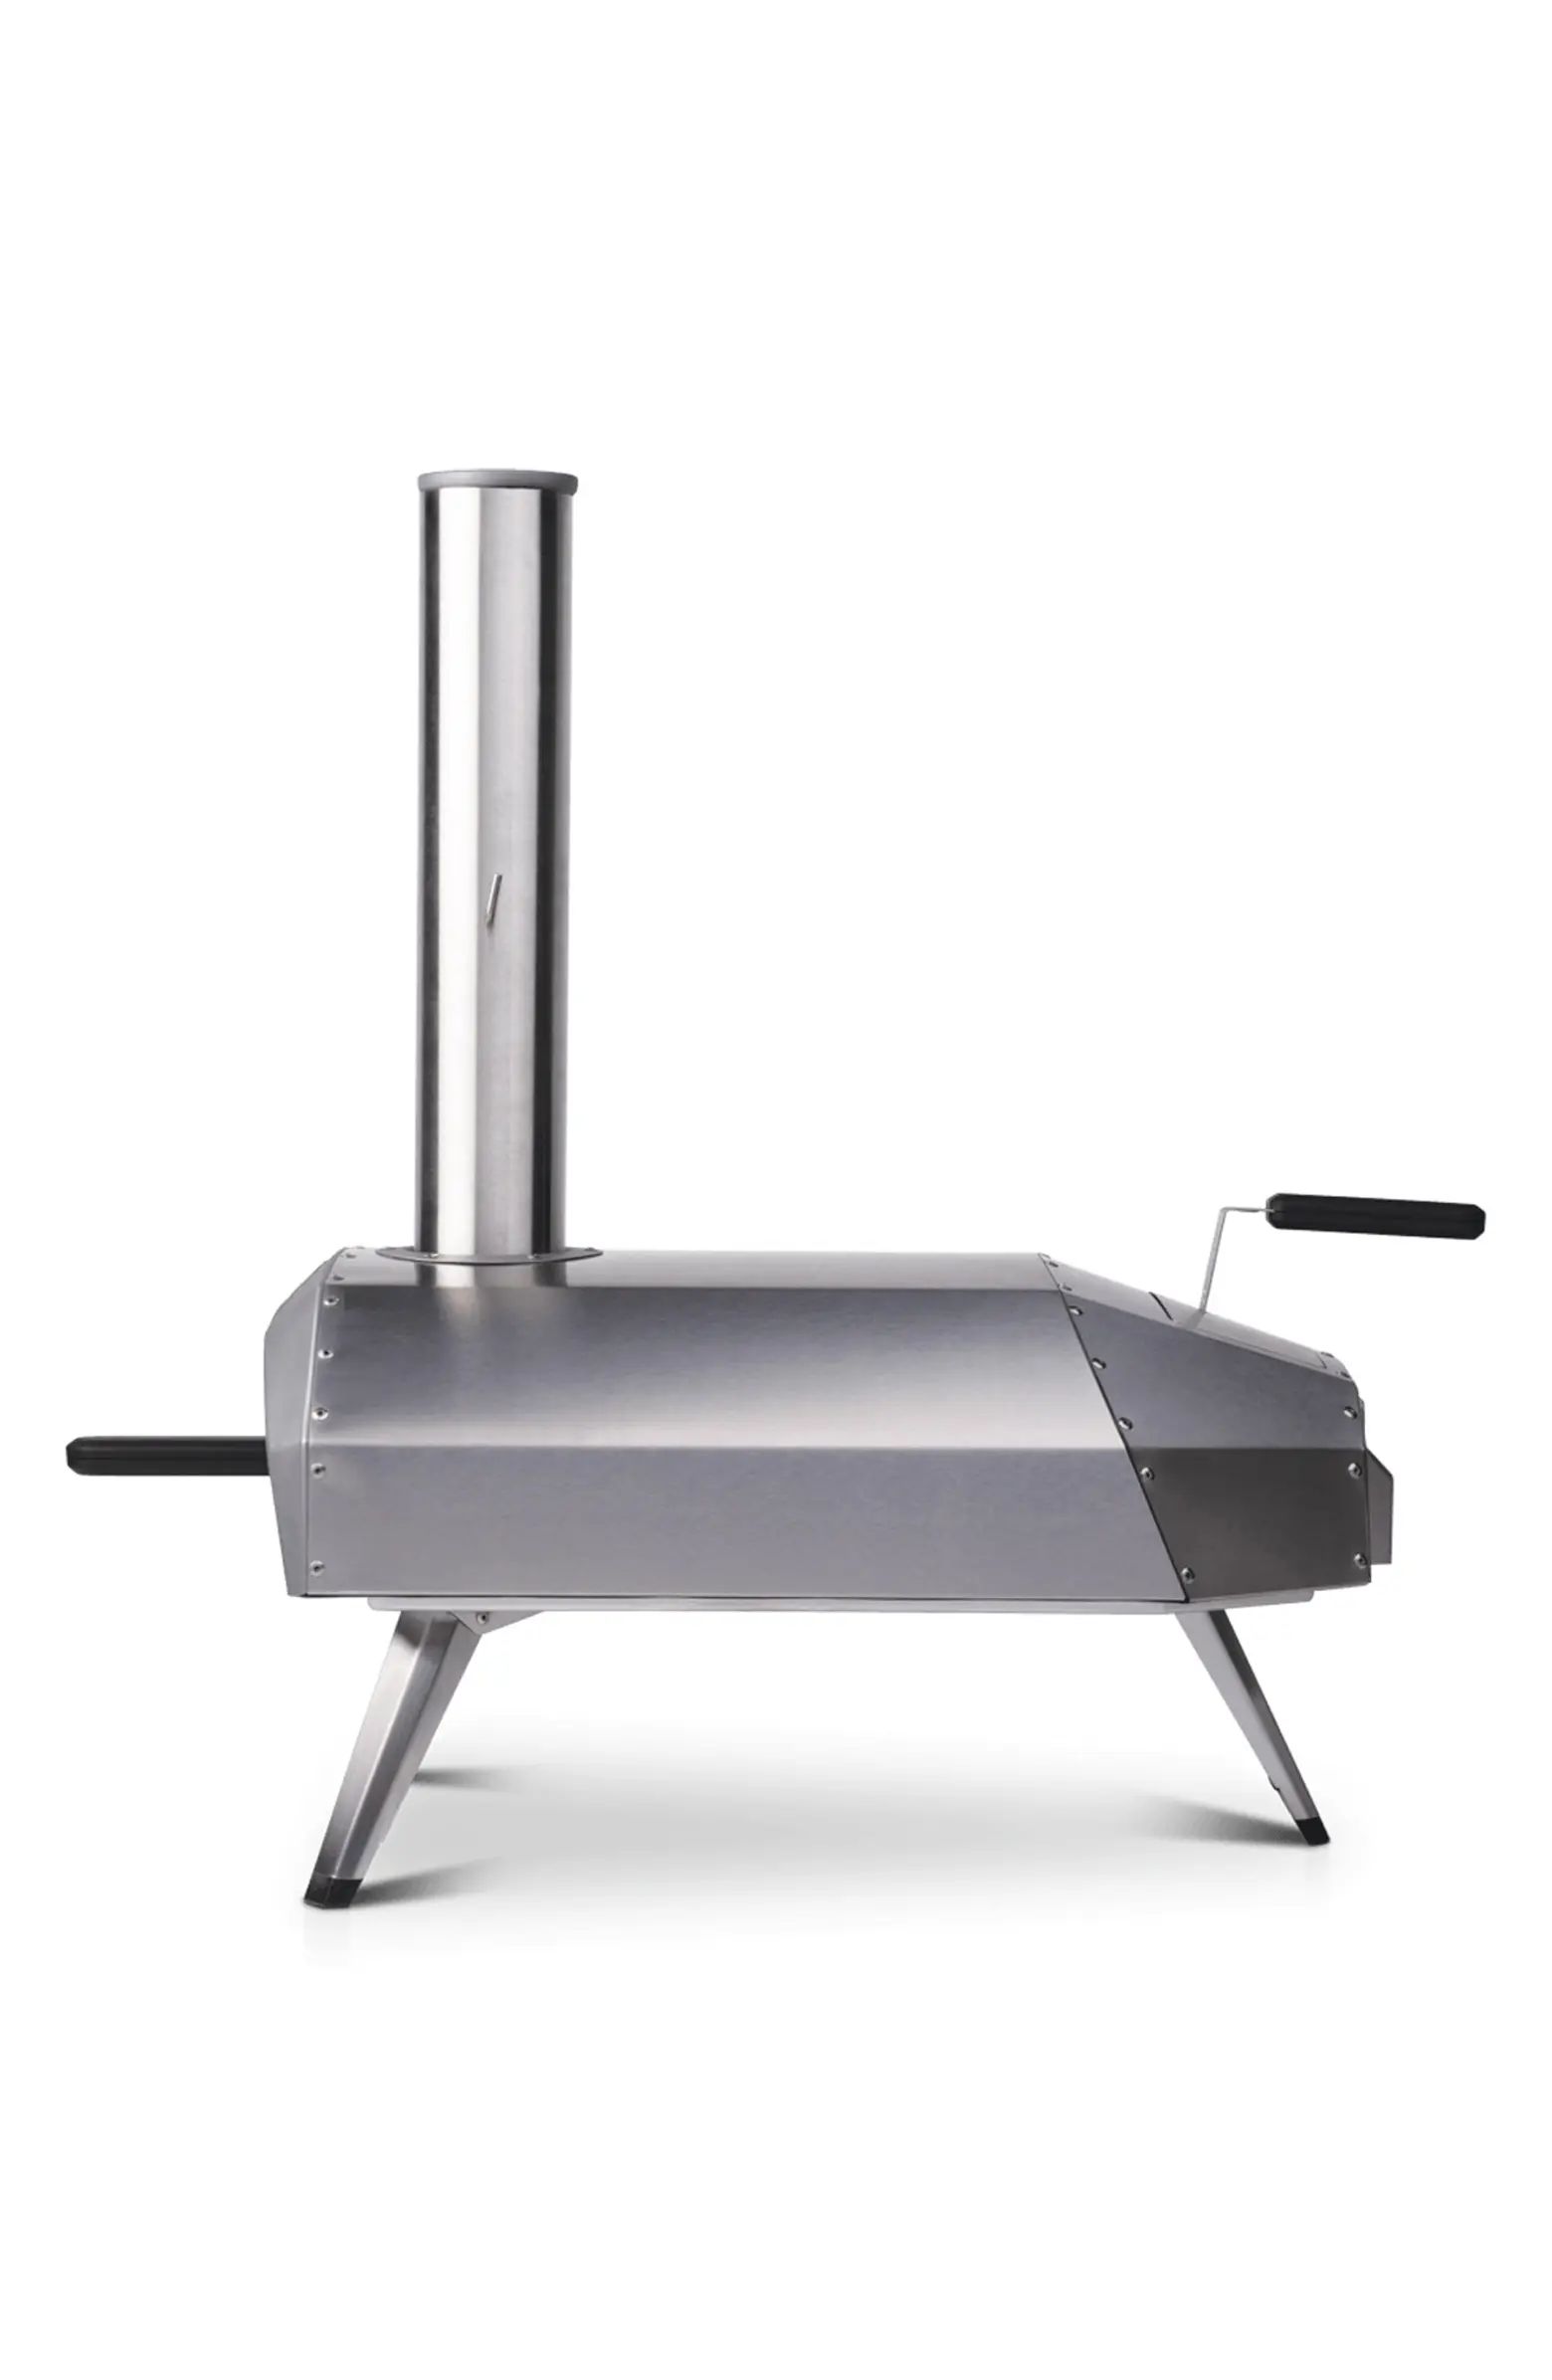 Gas Burner for Karu 12 Pizza Oven | Nordstrom